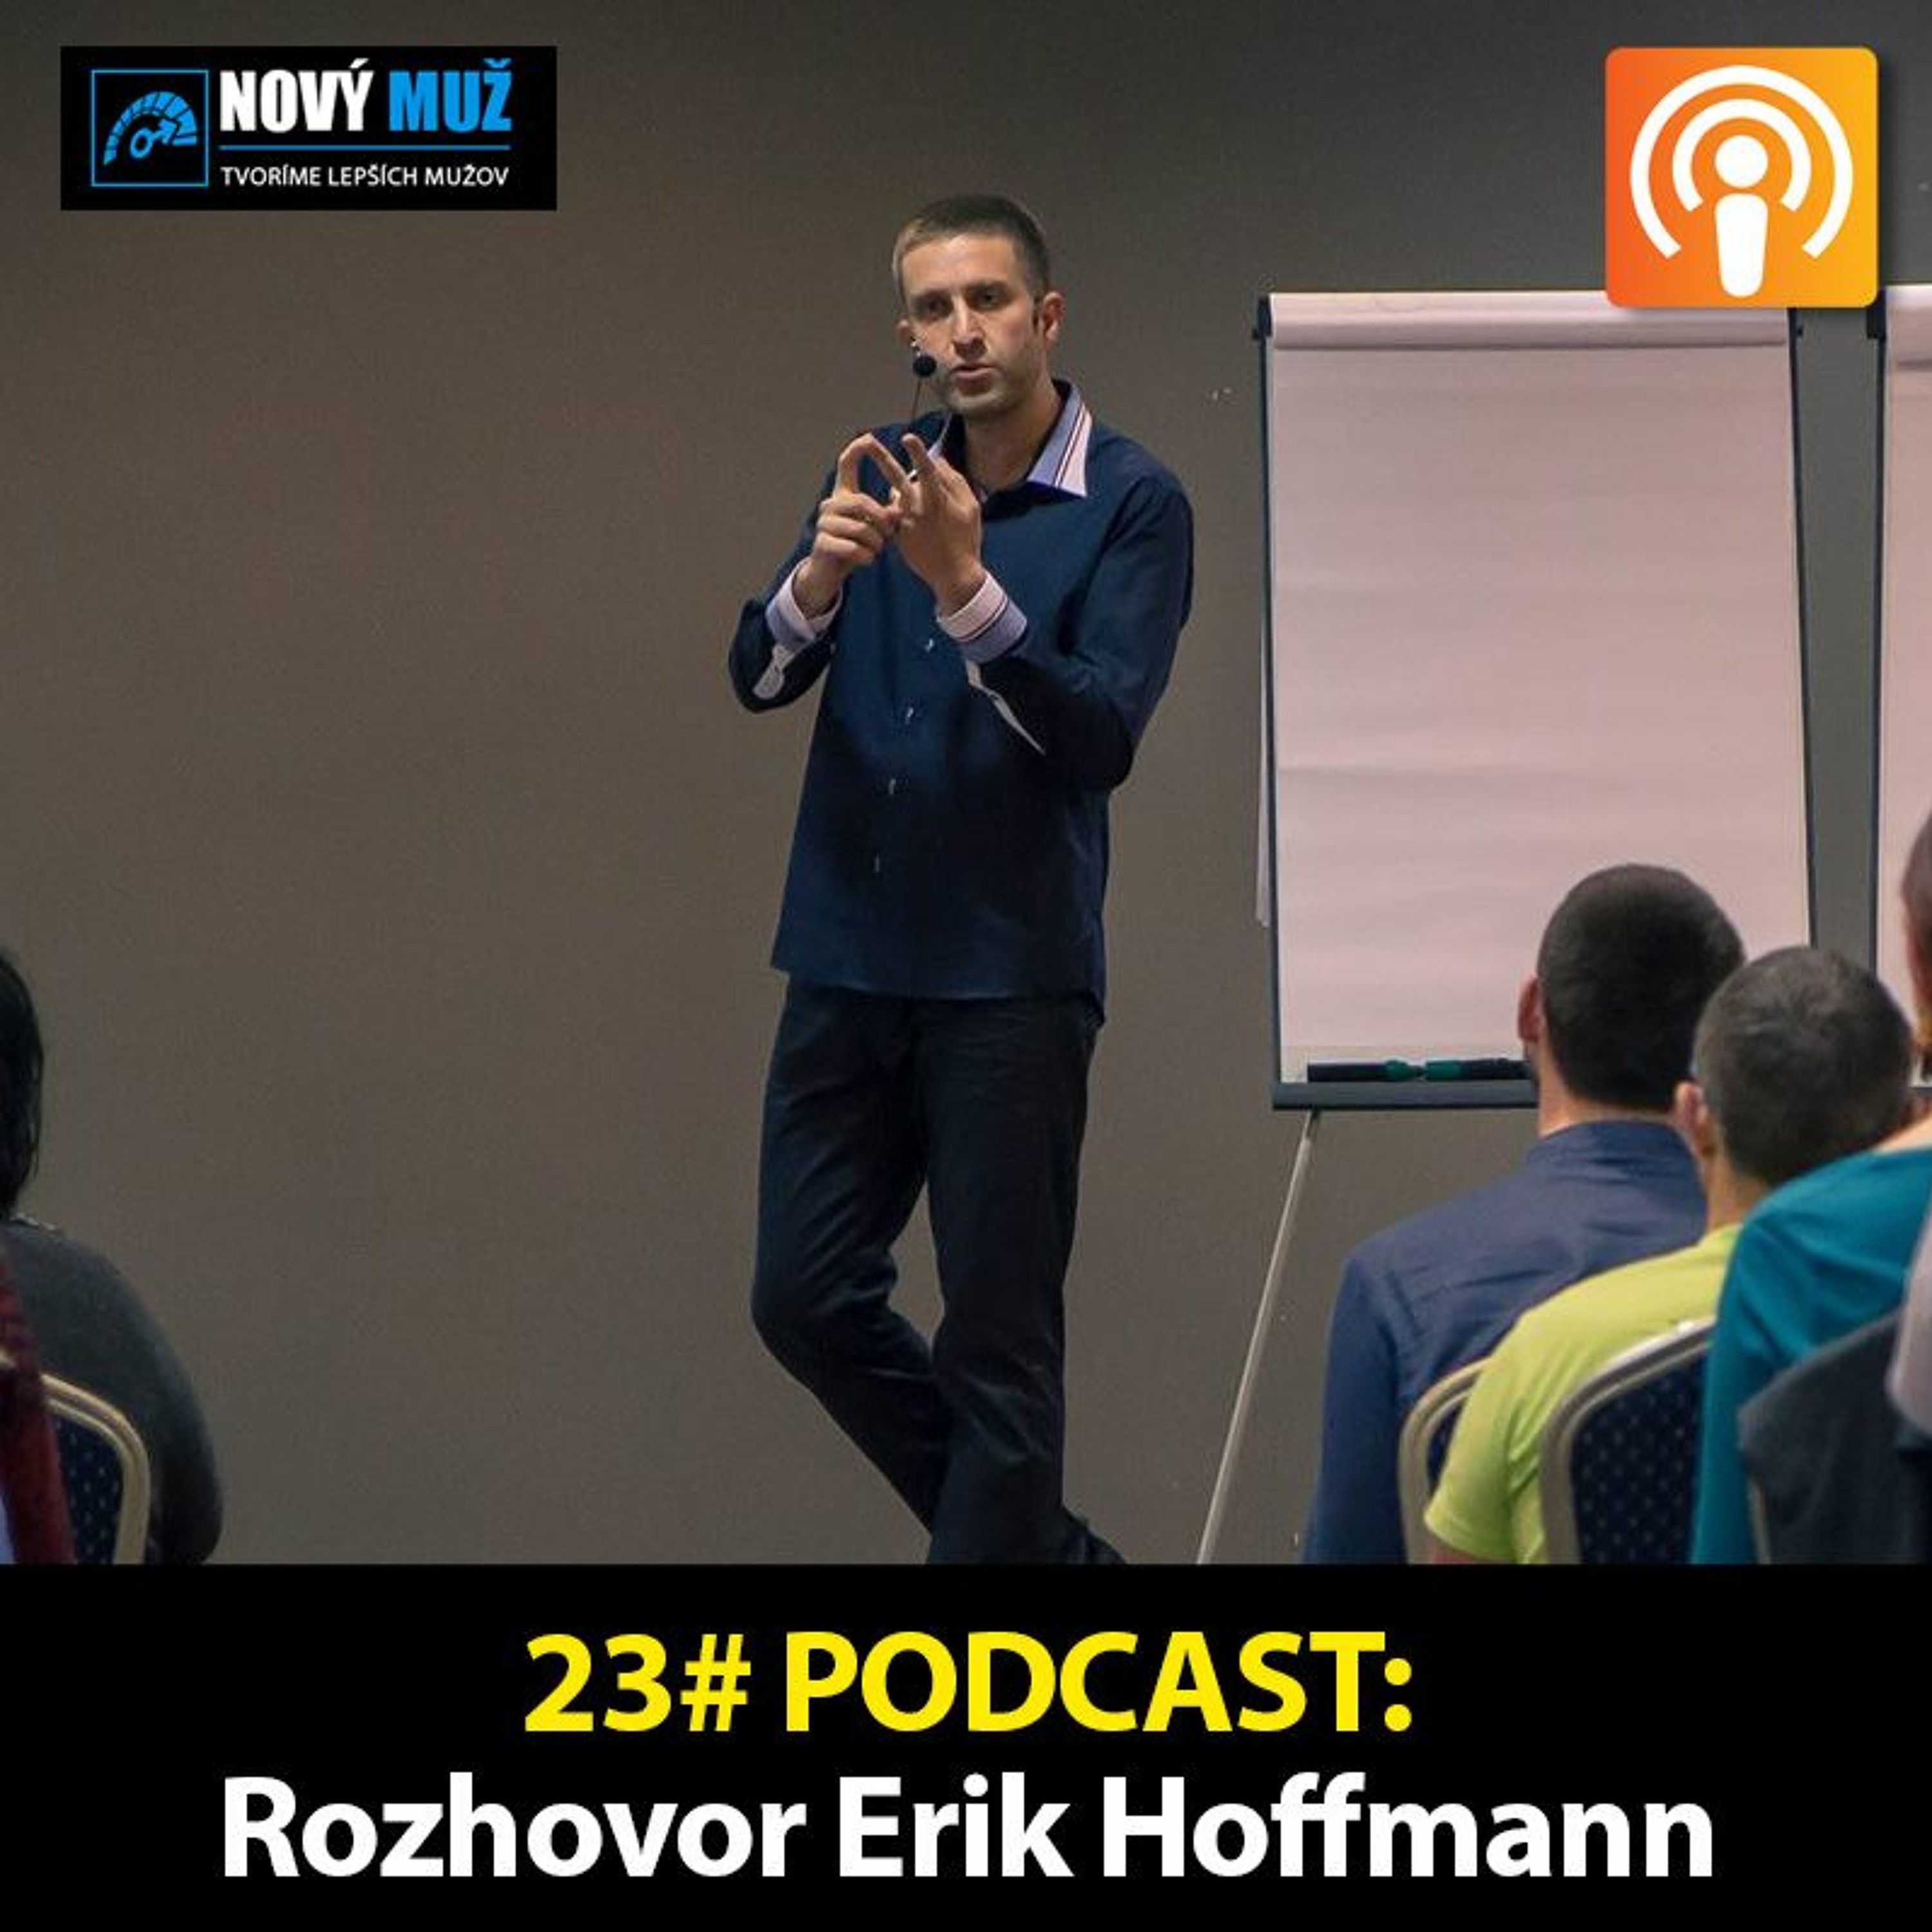 23#PODCAST - Rozhovor Erik Hoffman - Ako začať podnikať vďaka internetu